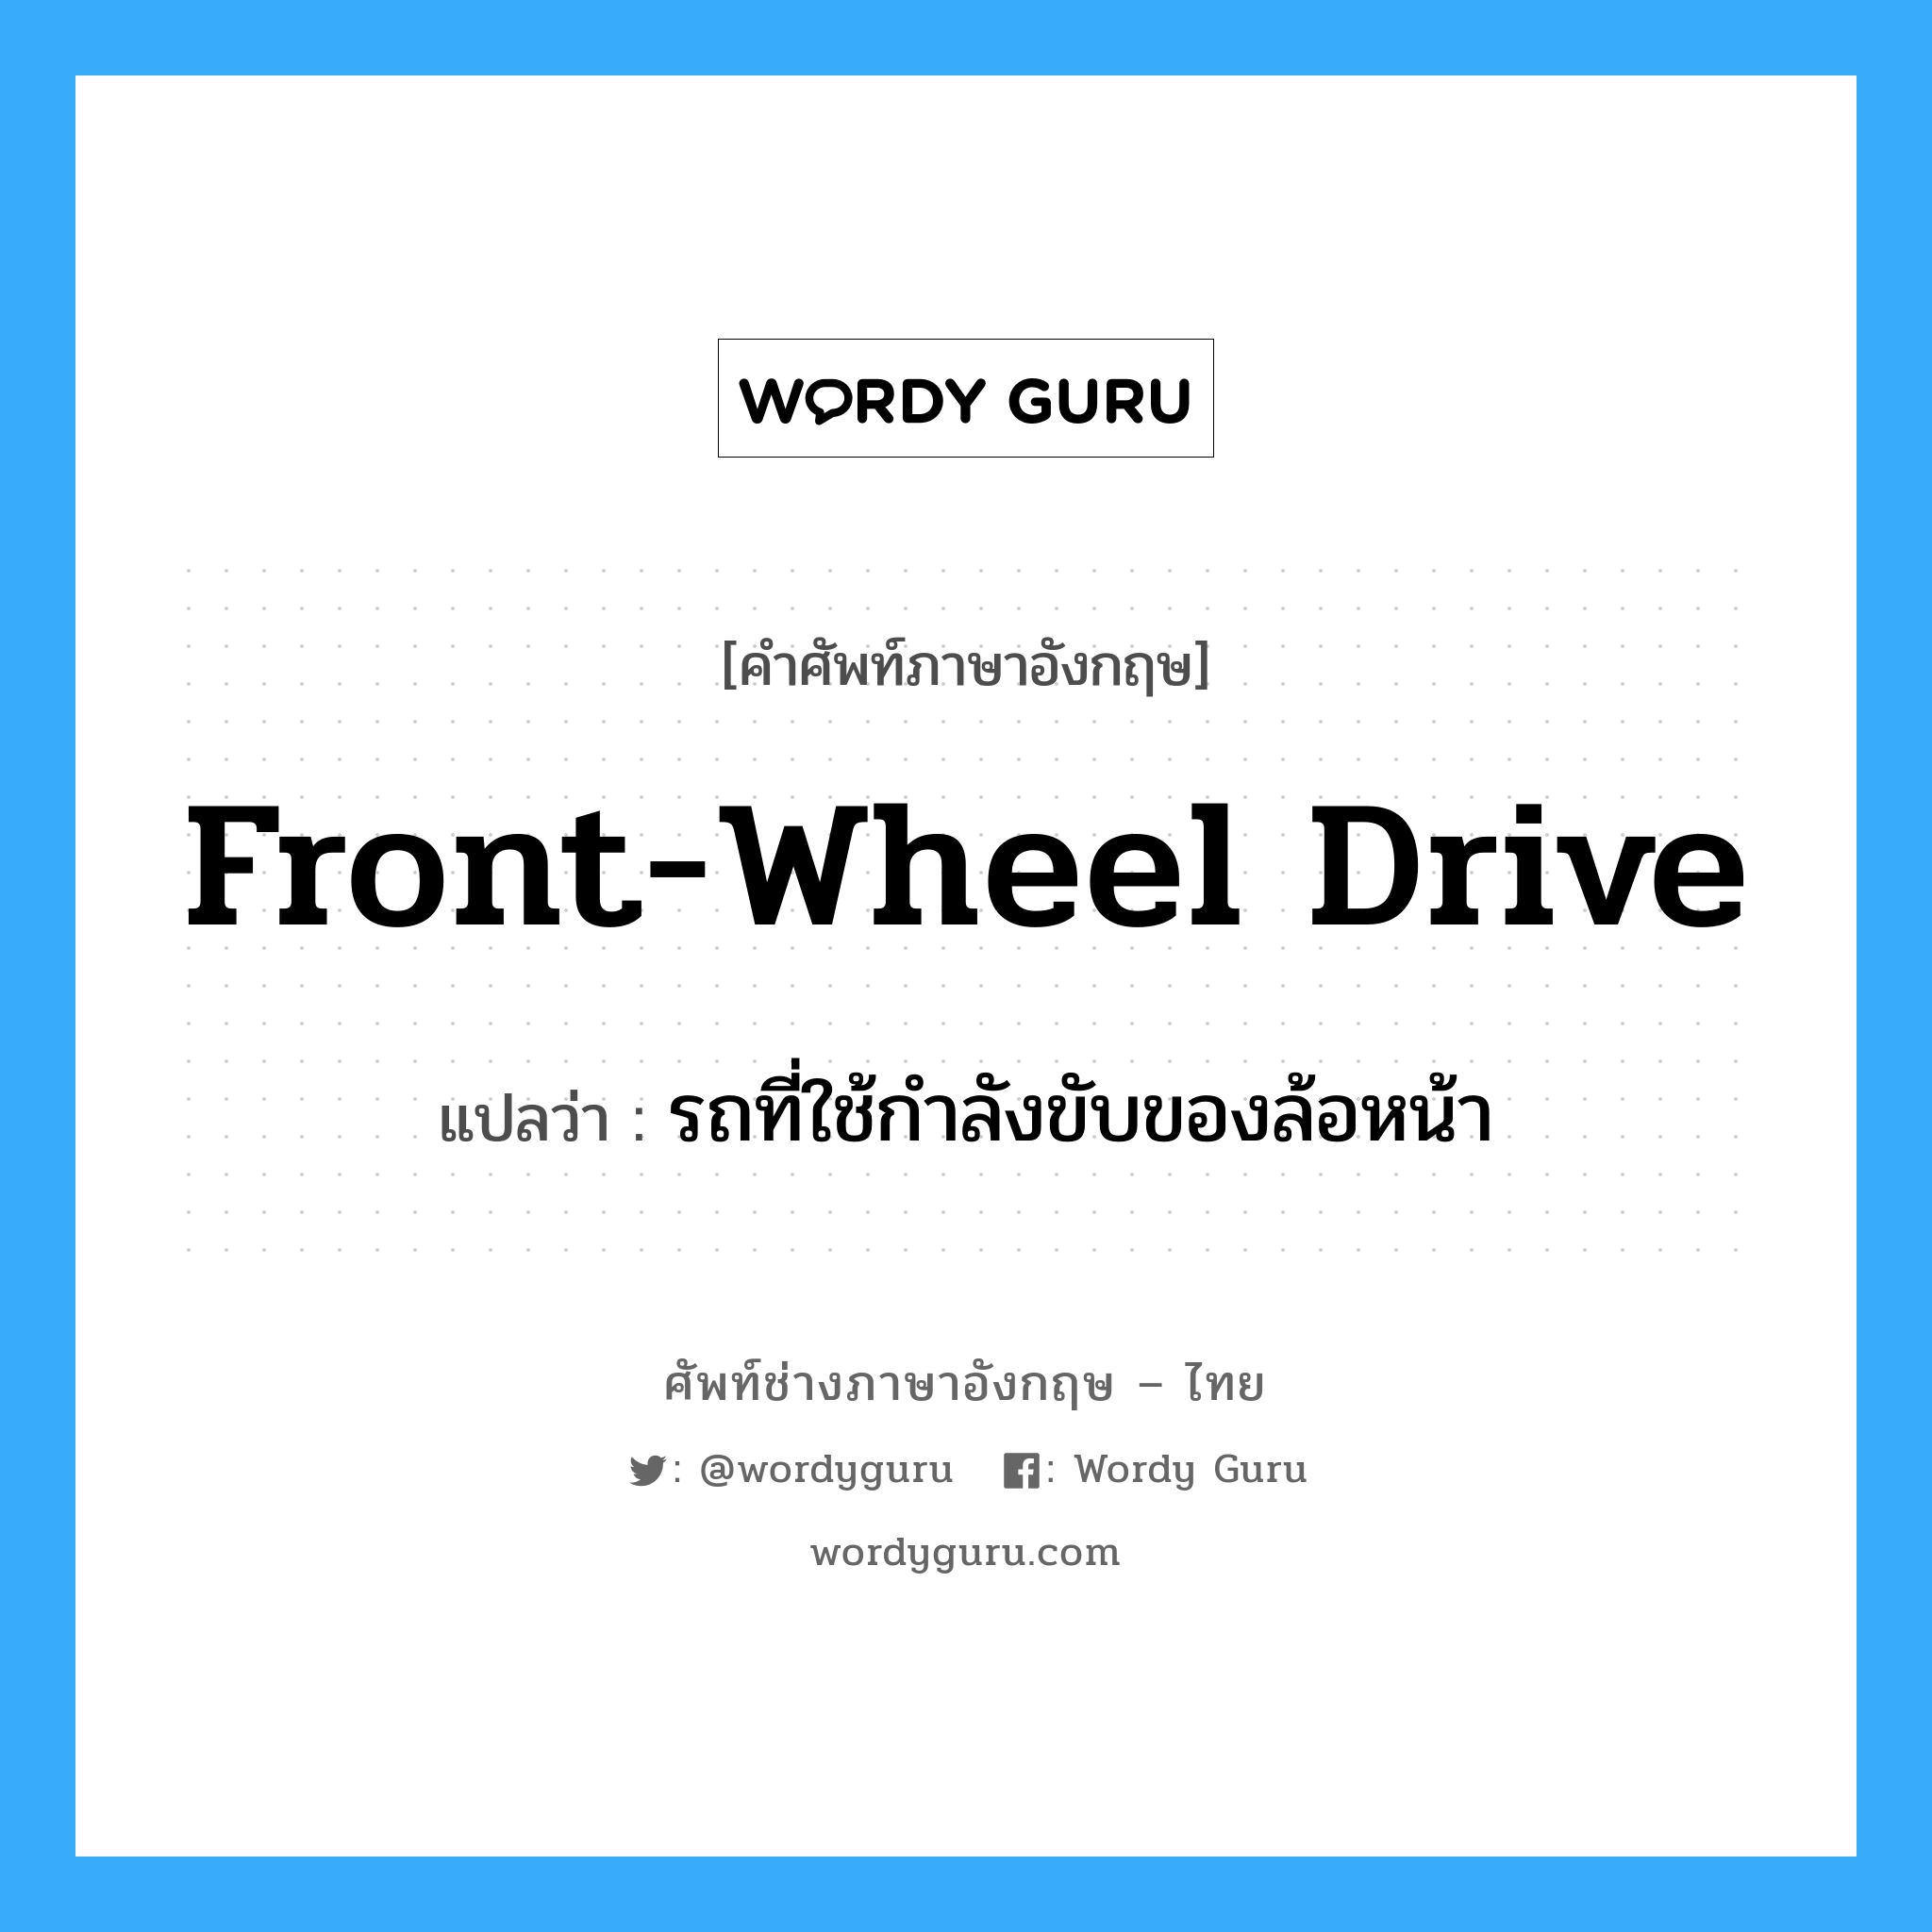 front-wheel drive แปลว่า?, คำศัพท์ช่างภาษาอังกฤษ - ไทย front-wheel drive คำศัพท์ภาษาอังกฤษ front-wheel drive แปลว่า รถที่ใช้กำลังขับของล้อหน้า